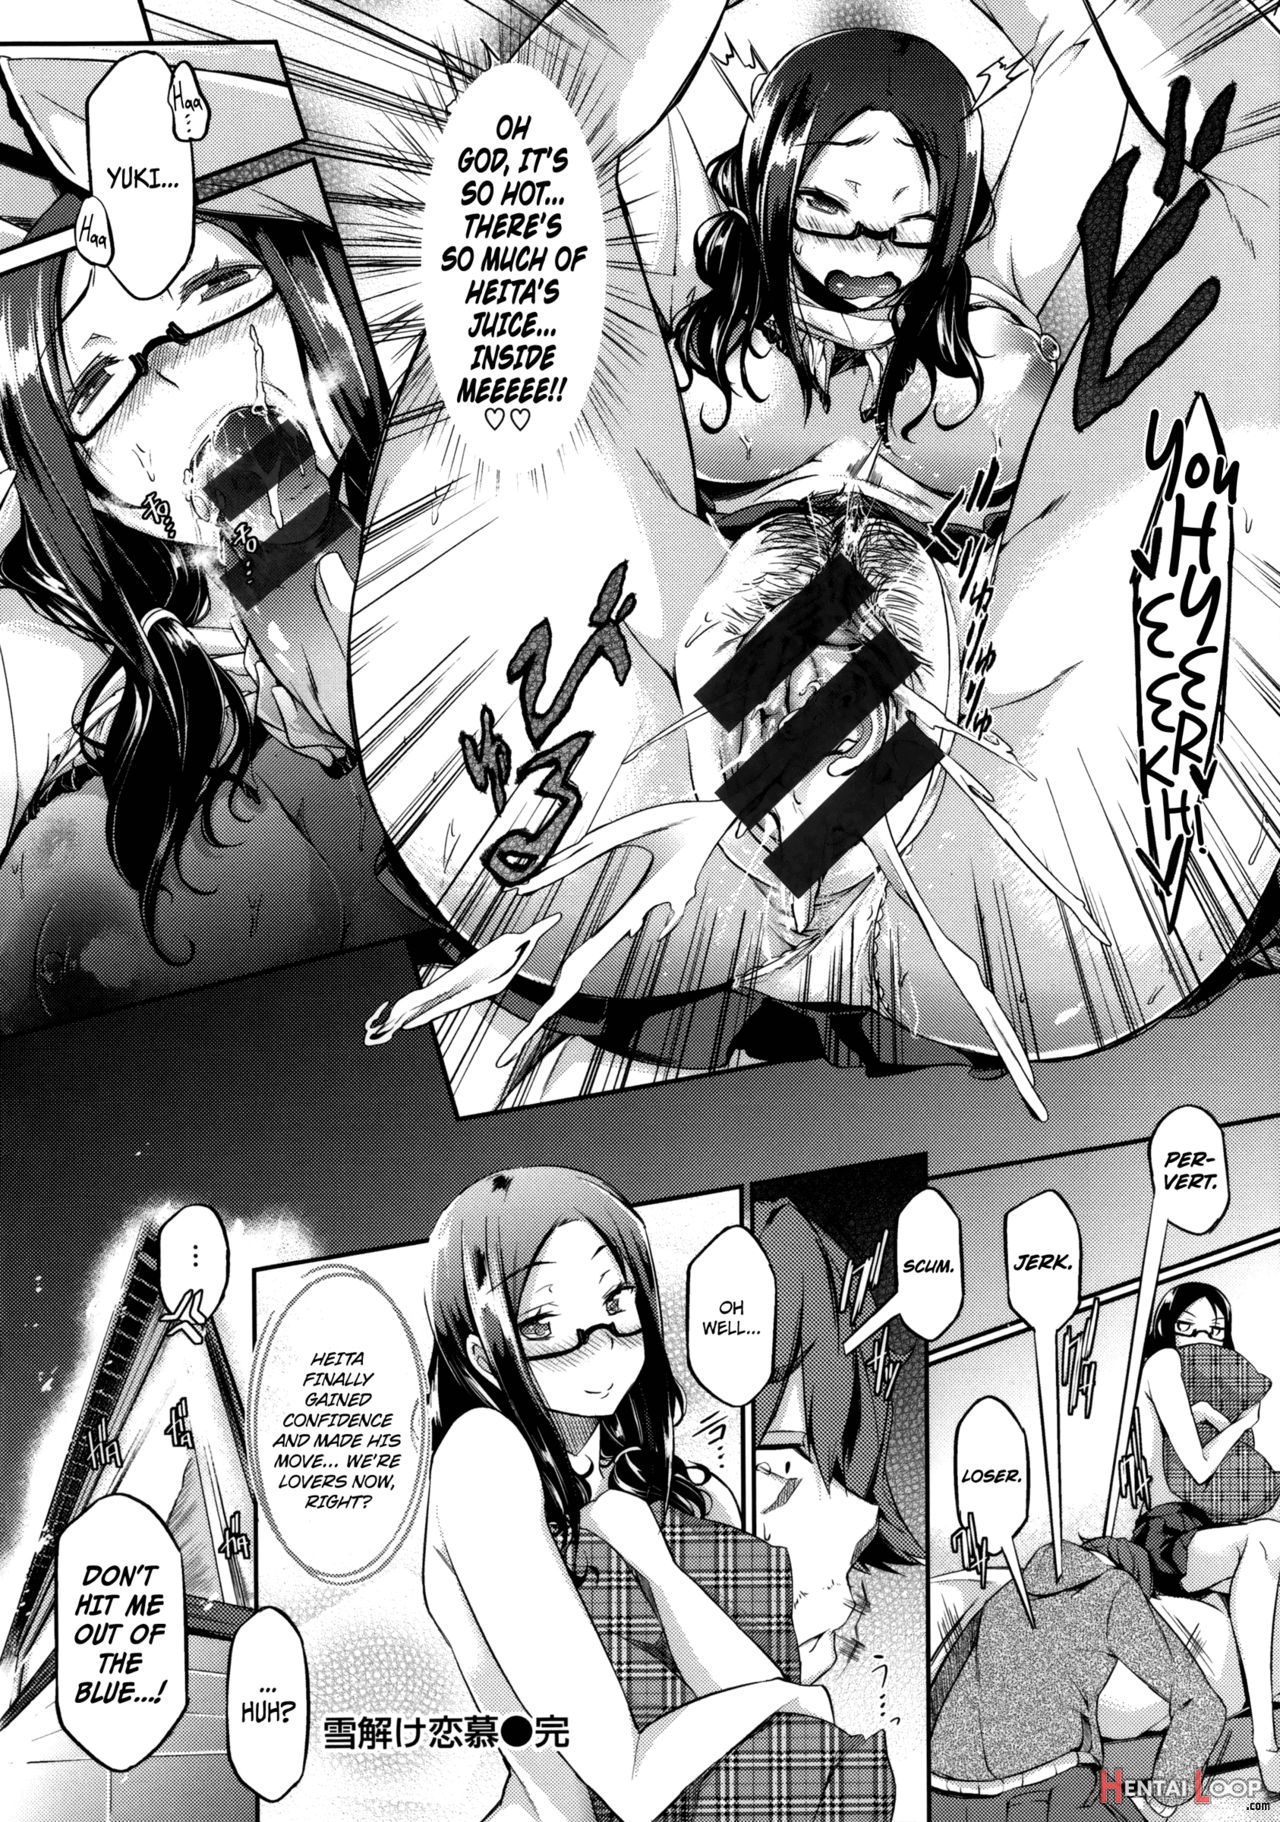 Yukidoke Renbo + Yukidoke Renbo ~another Point~ page 16